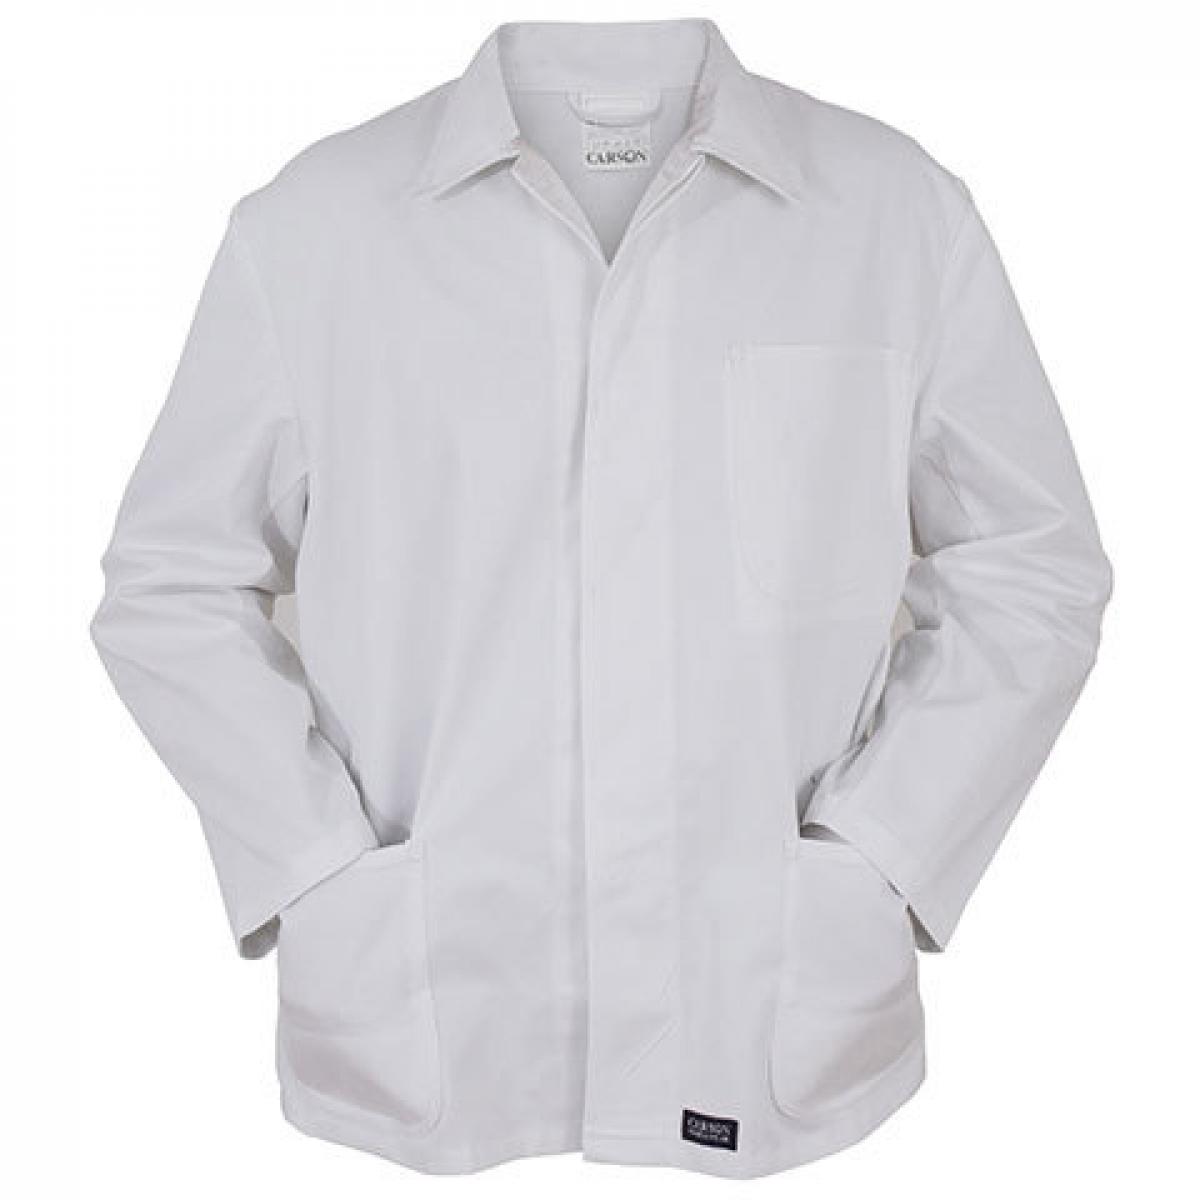 Hersteller: Carson Classic Workwear Herstellernummer: KTH709J Artikelbezeichnung: Herren Classic Long Work Jacket bis 60 Grad waschbar Farbe: White